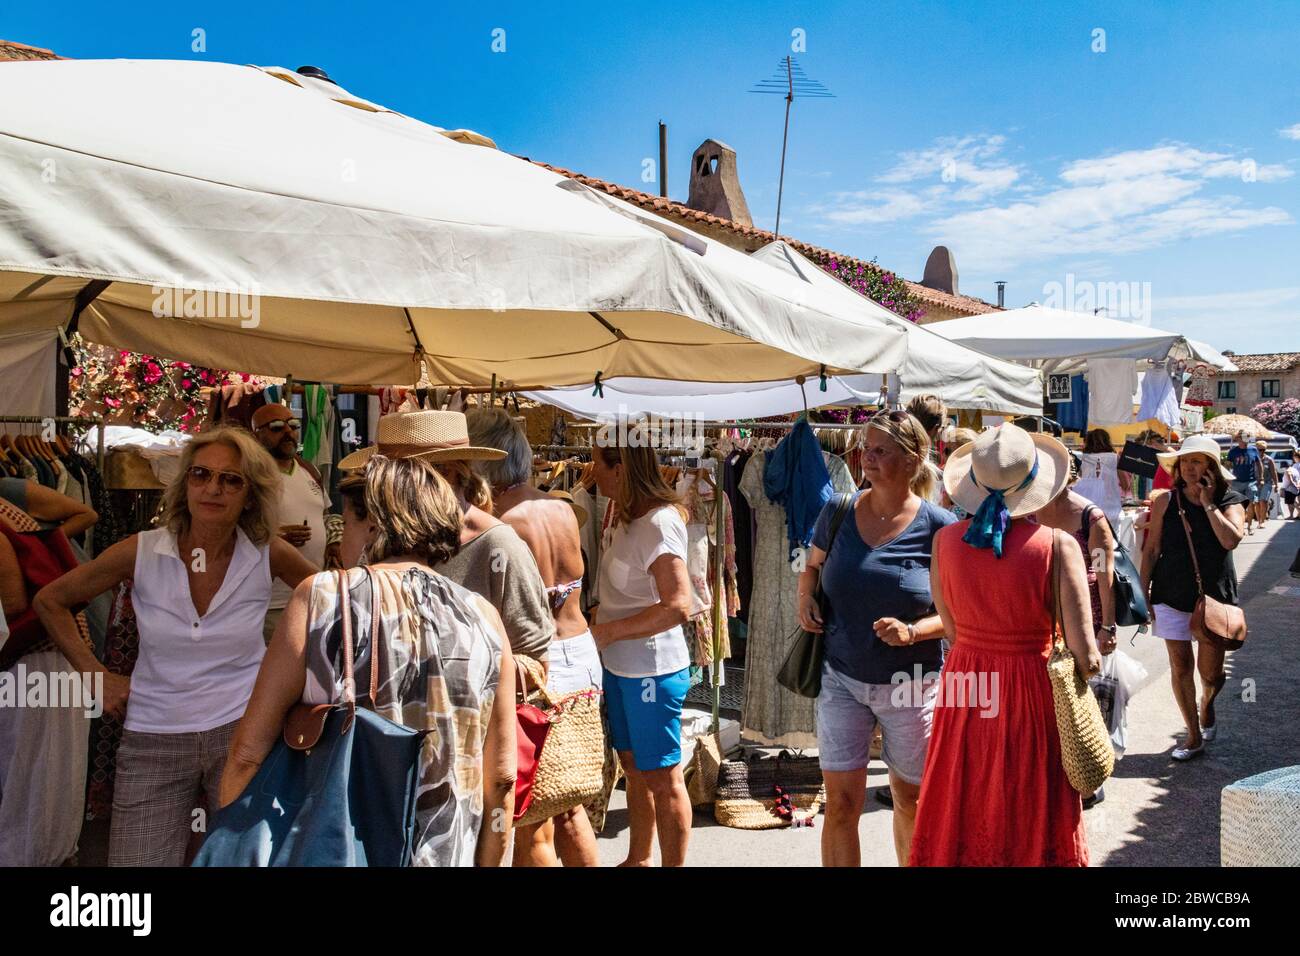 Shopping in un mercato occupato: Scena con i visitatori curiosare tra le bancarelle in un mercato estivo settimanale e chiacchierare a San Pantaleo, Gallura, Sardegna, Italia. Foto Stock